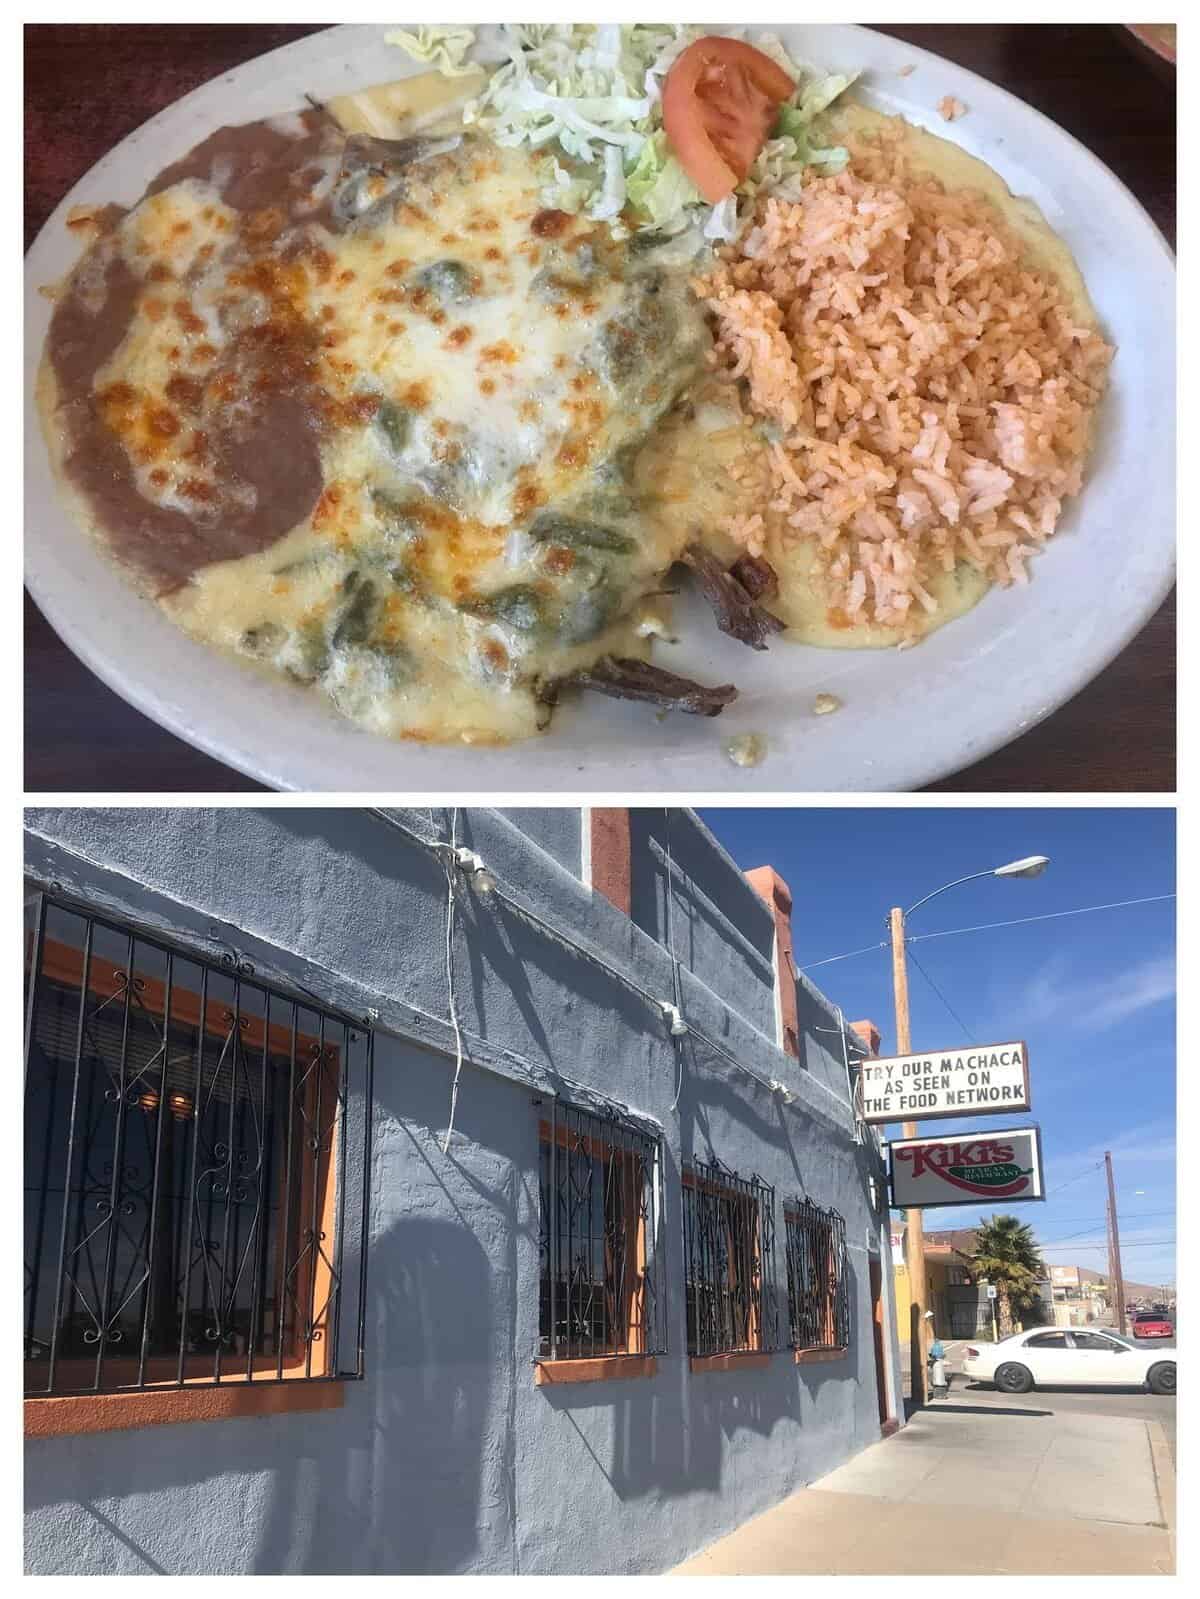 Kiki's in El Paso